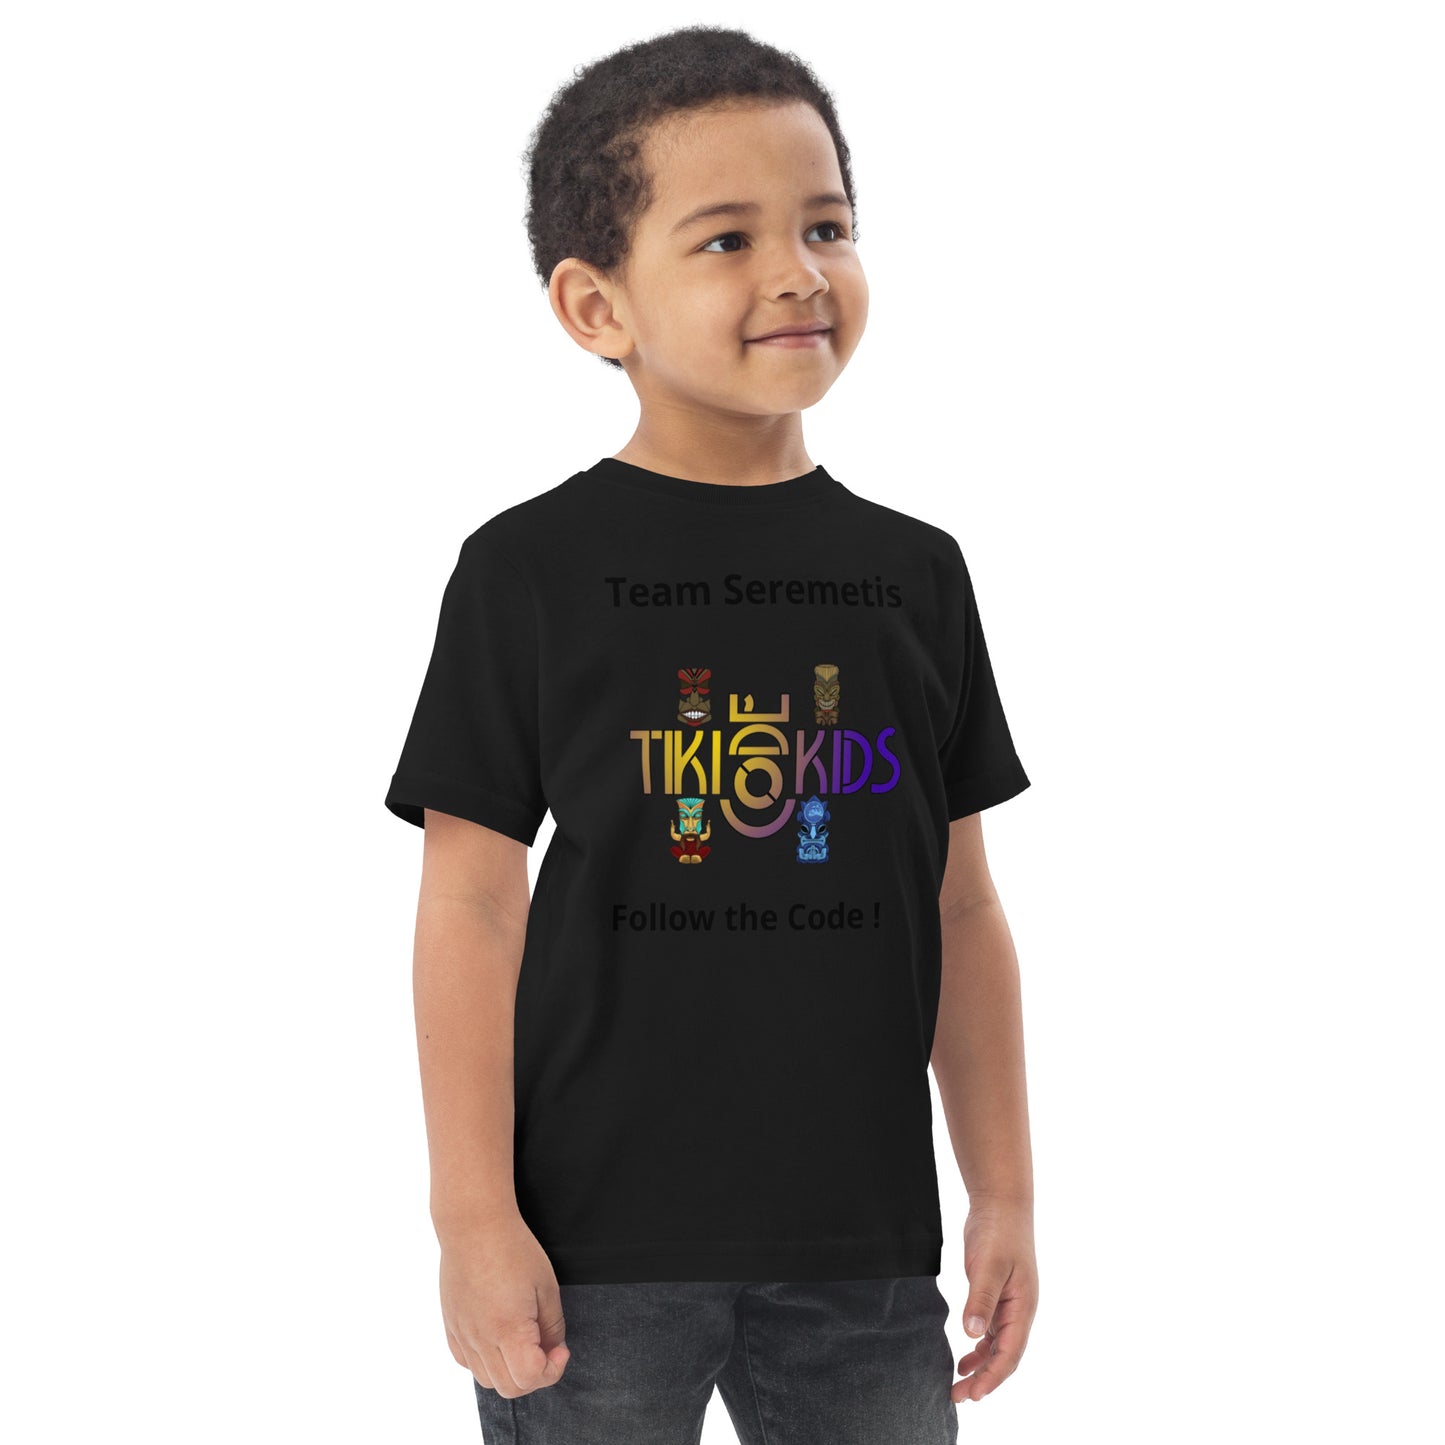 Team Seremetis Tiki Code Kids Toddler jersey t-shirt